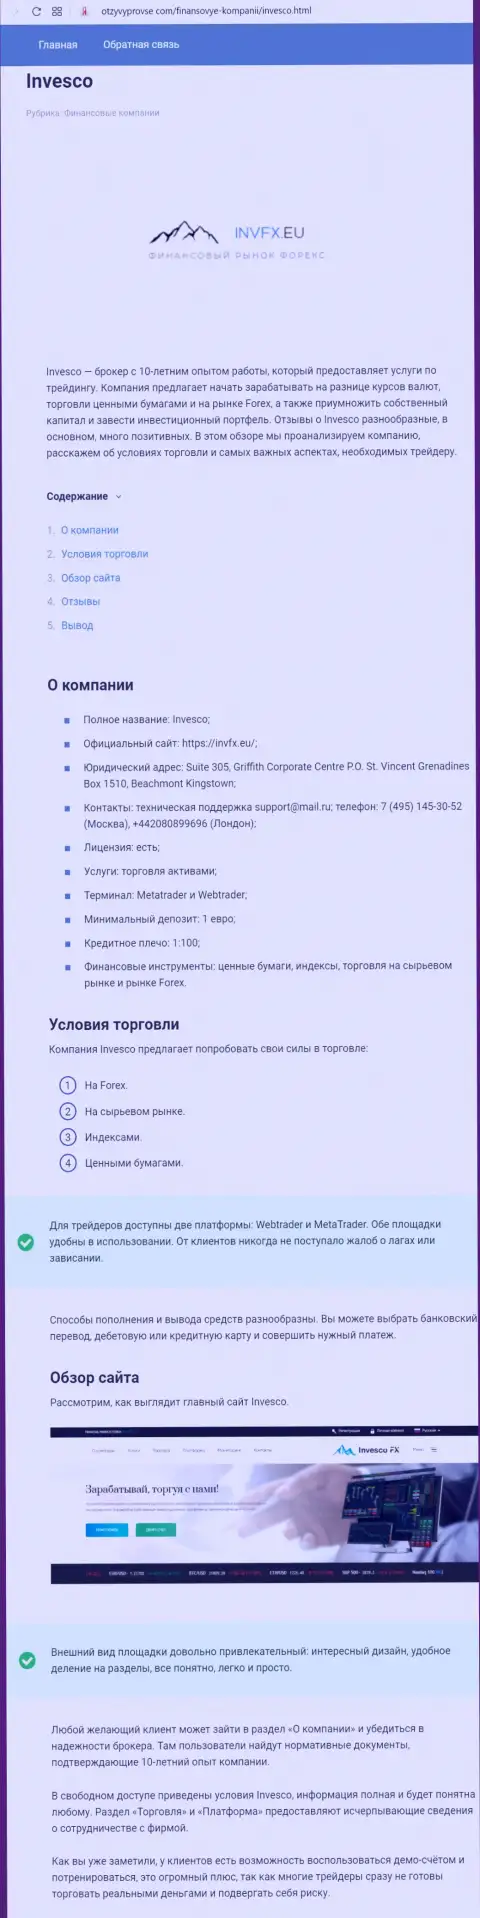 Подробная информация о ФОРЕКС брокерской компании INVFX на полях сайта otzyvyprovse com